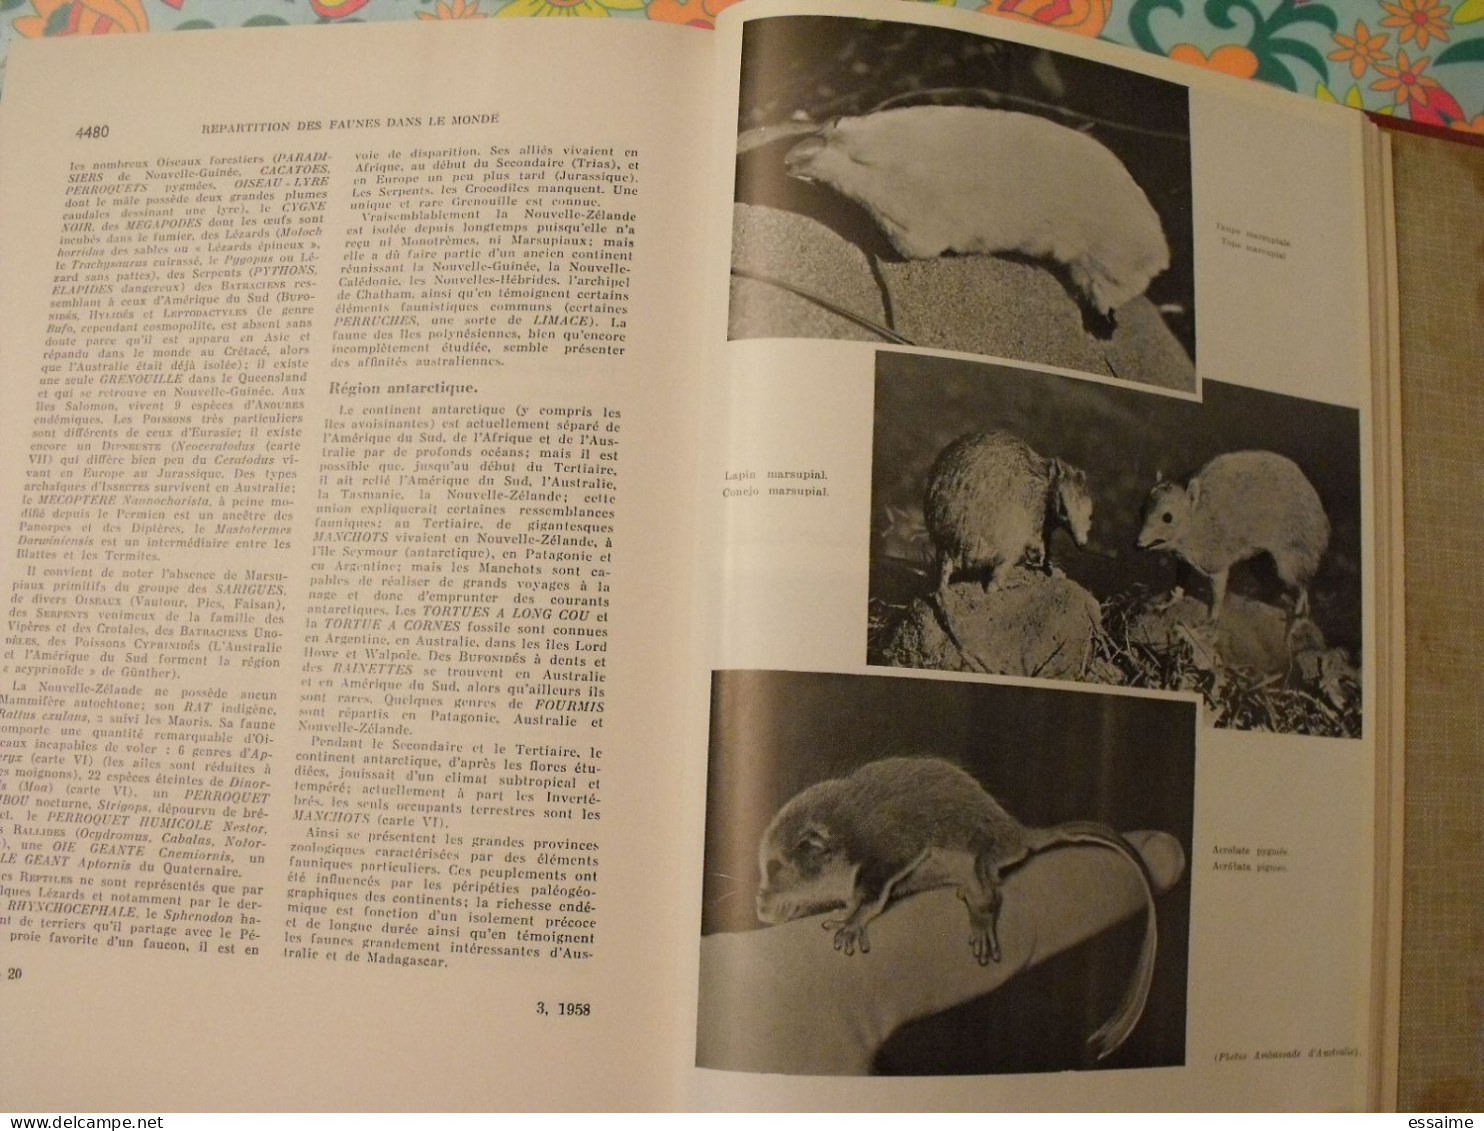 Encyclopédie Clartés. Etres Vivants. Végétaux Et Animaux. 1976. Très Illustré - Encyclopédies